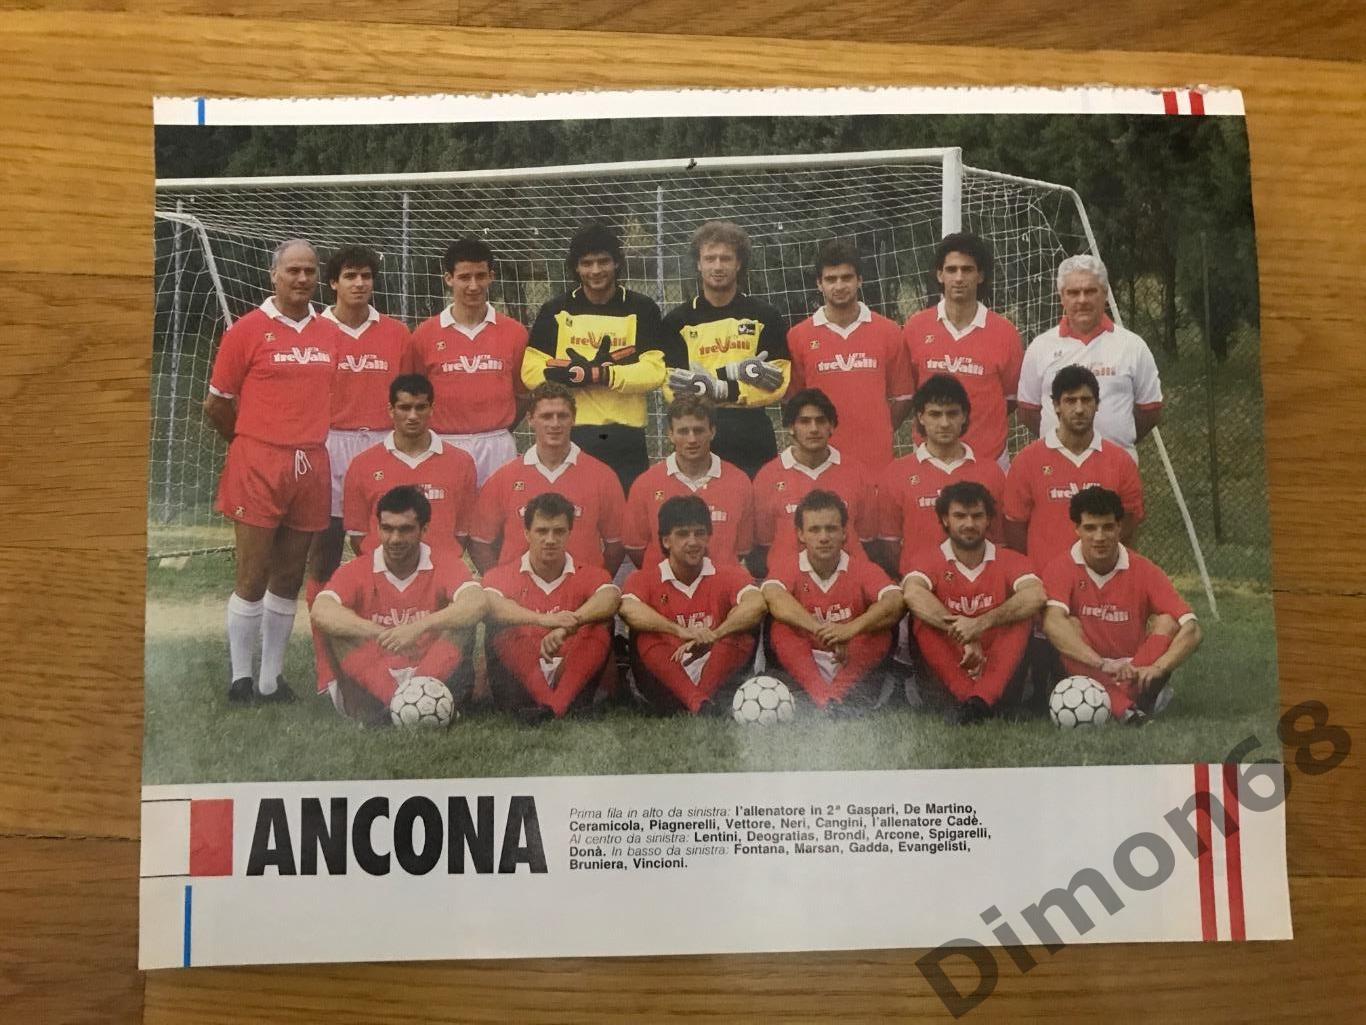 постеры команд серии B чемпионата италии сезон 88/89г